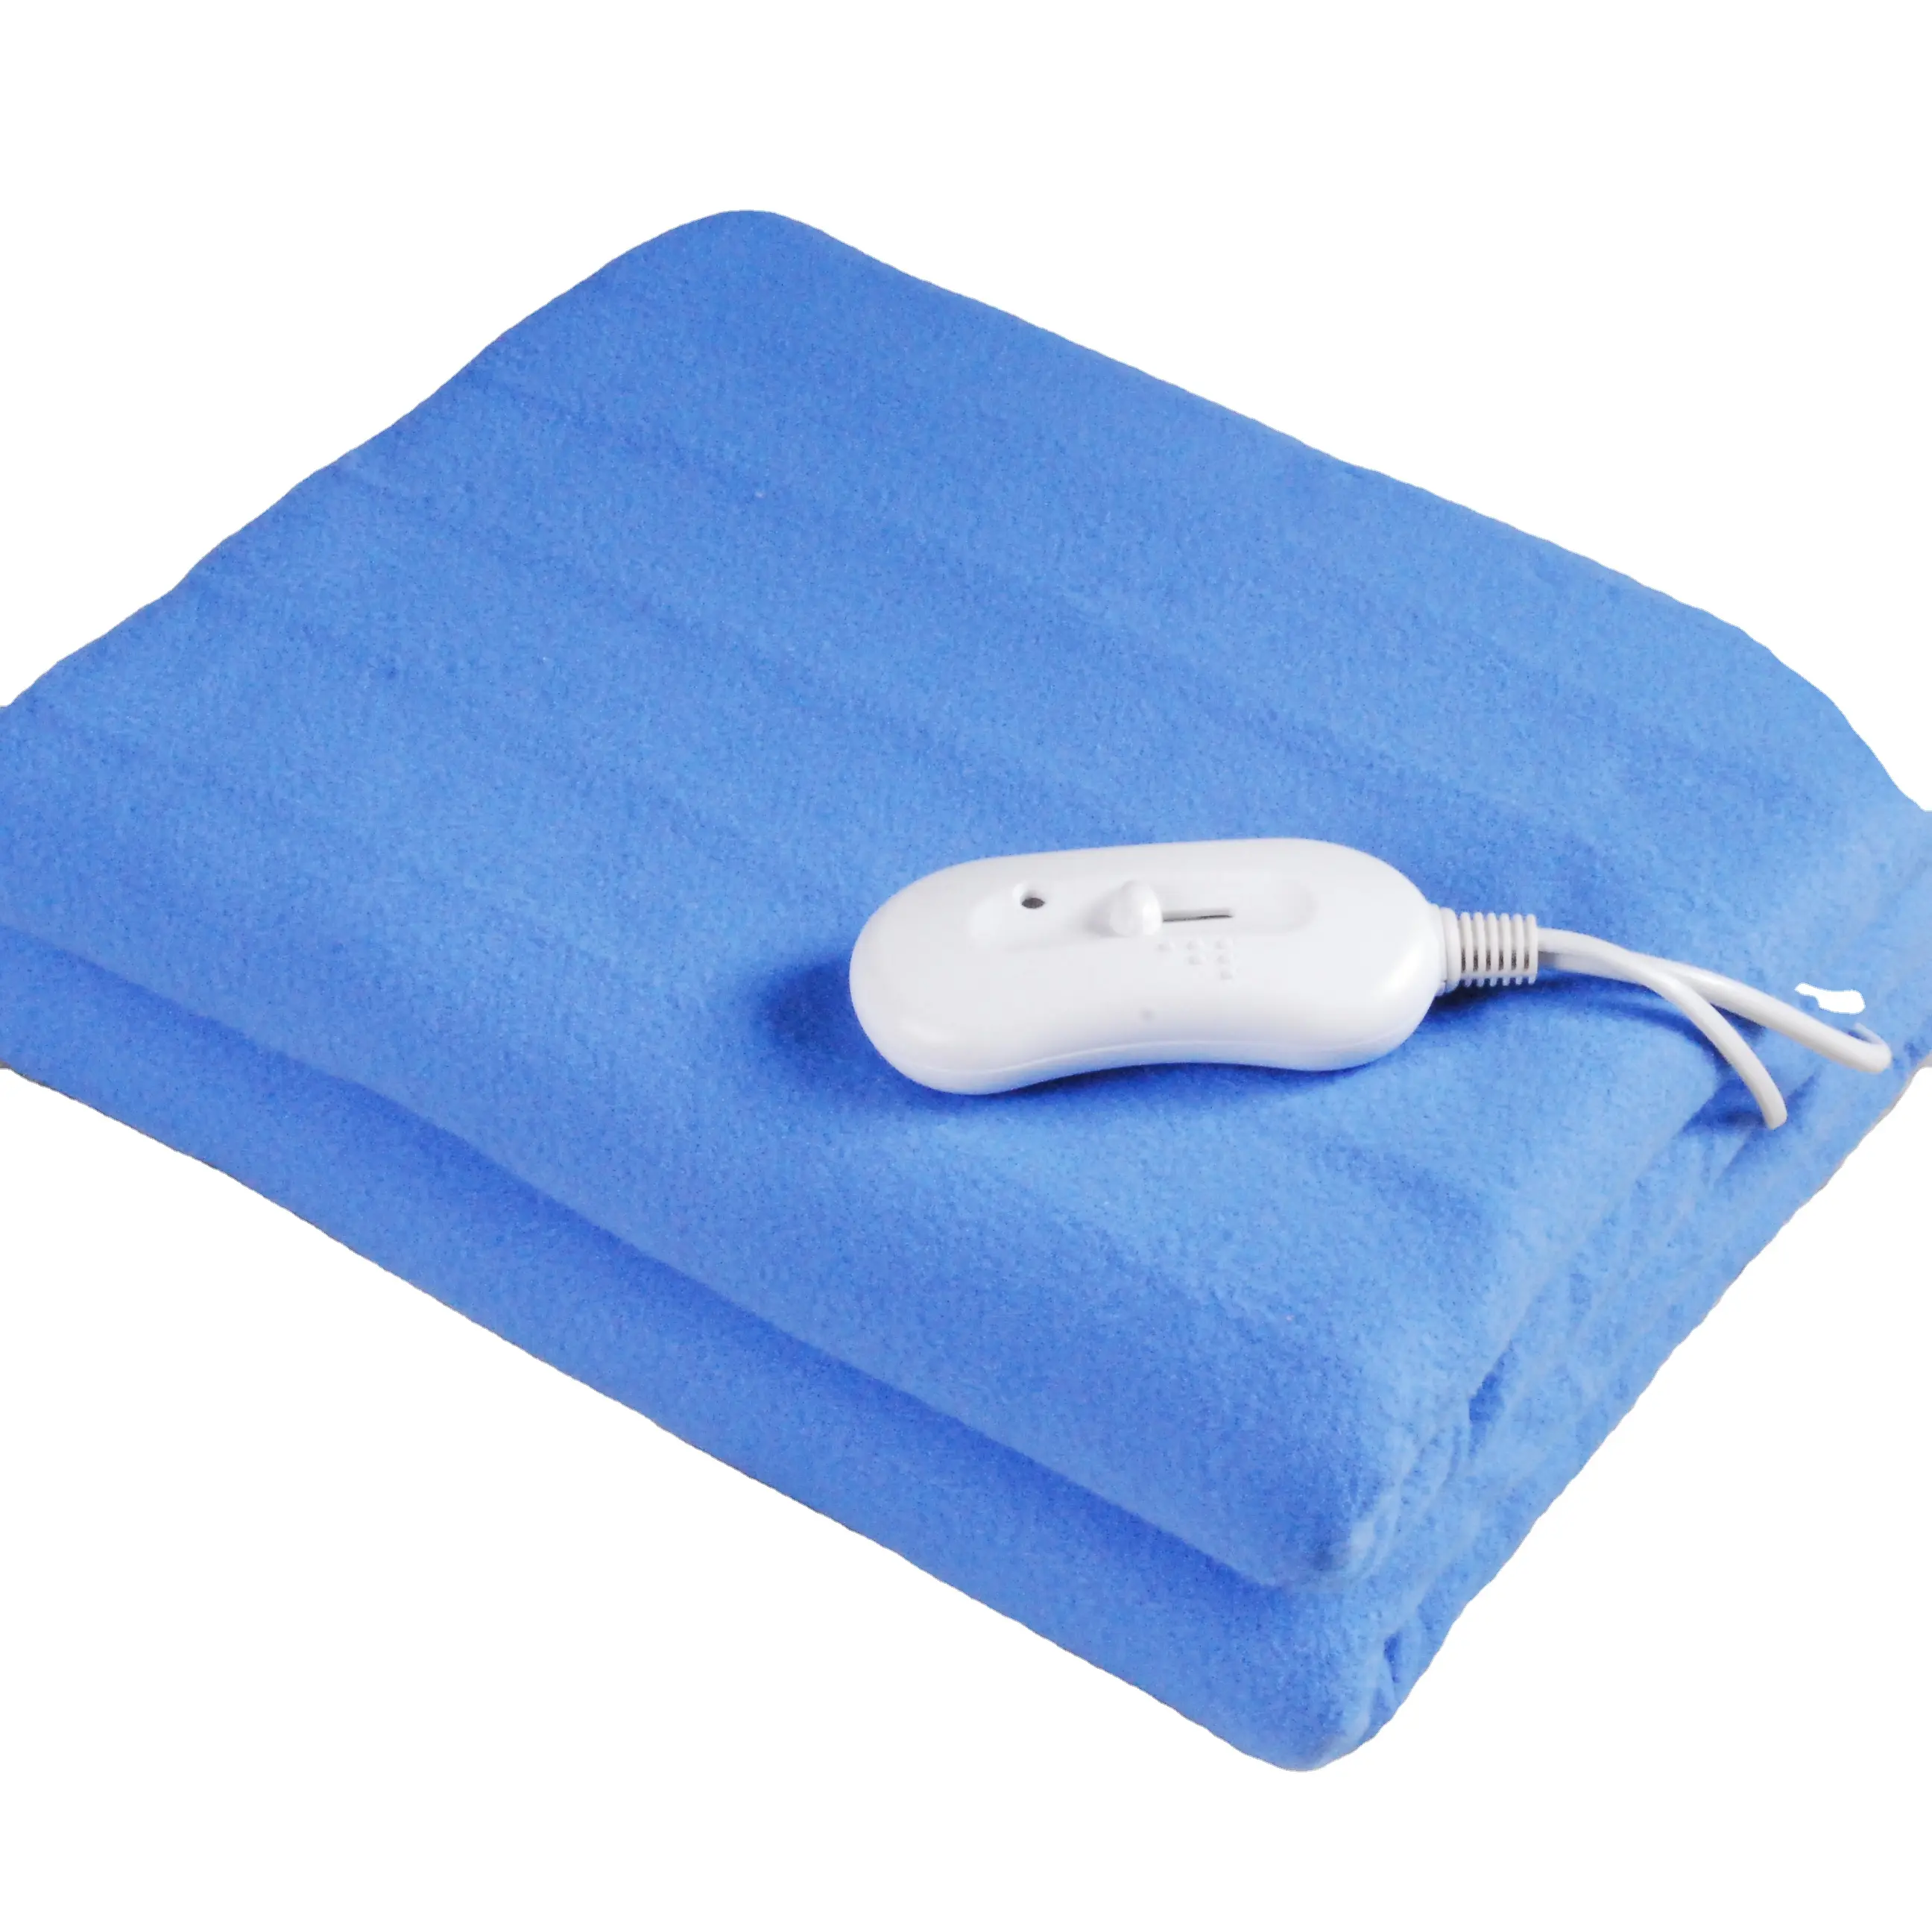 Mavi renk isıtmalı elektrikli battaniye manta electrica yatak isıtıcı elektrikli battaniyenin altında isıtmalı ısıtmalı yatak kapak isıtıcı